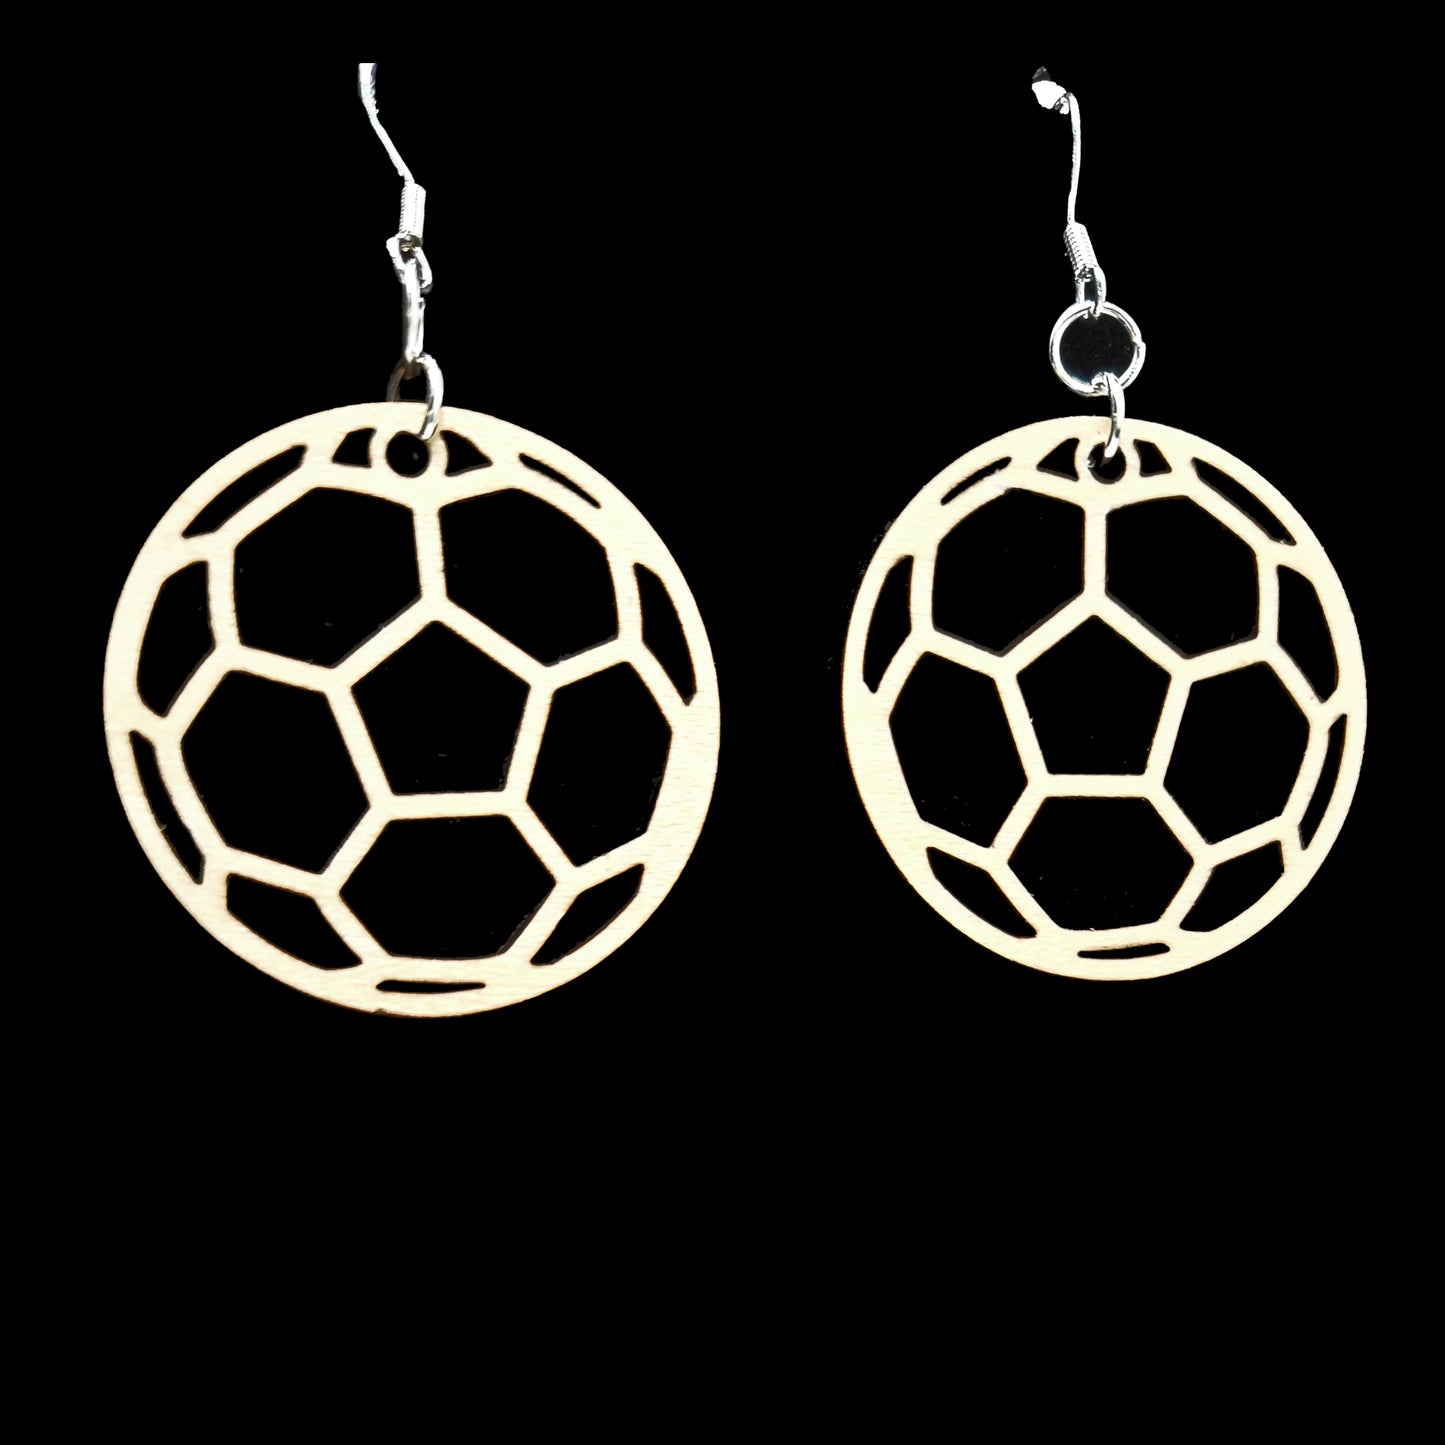 Soccer Earrings and Pendant Set